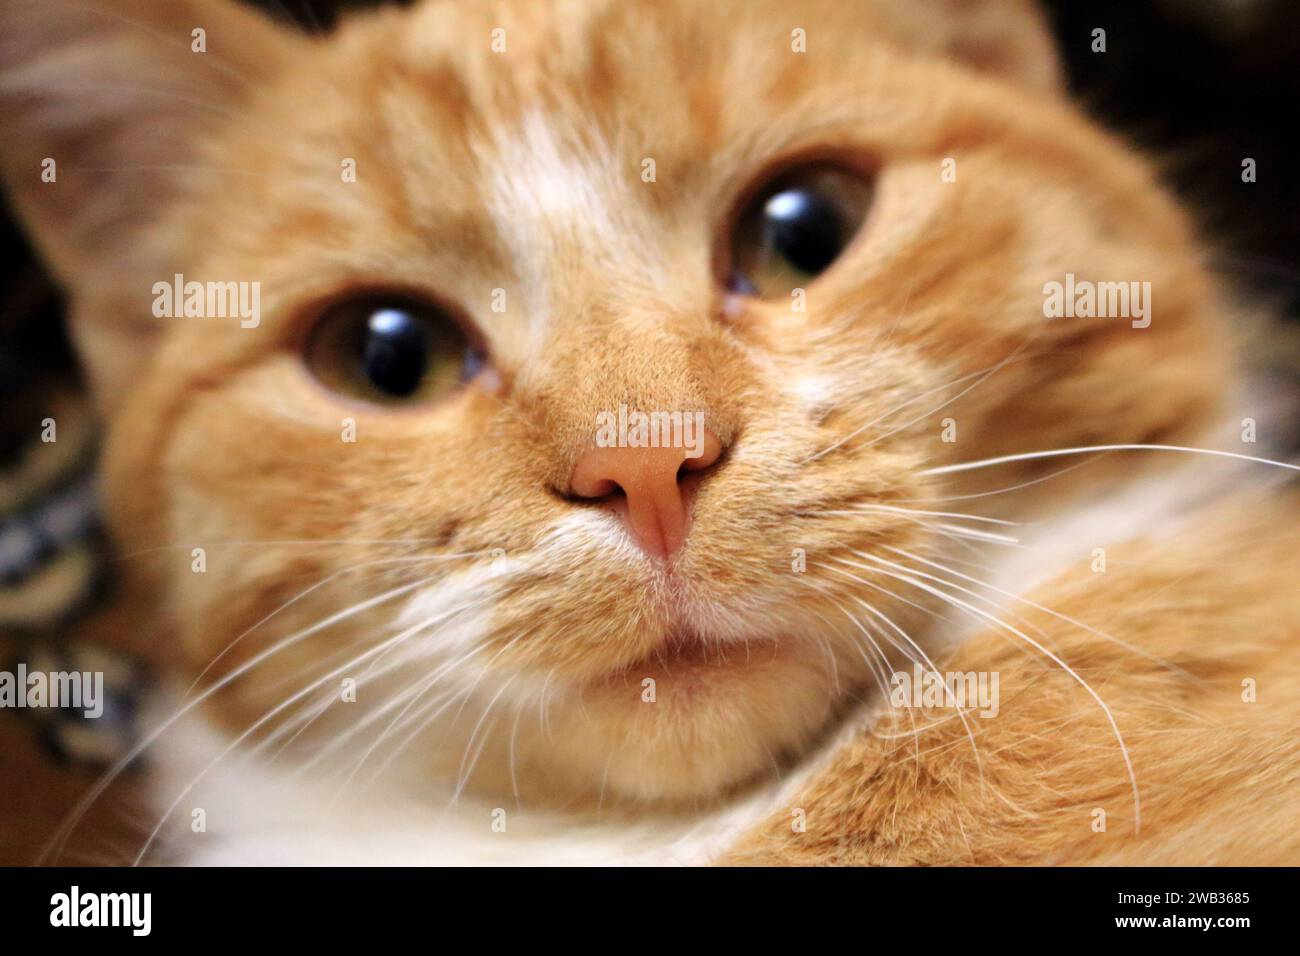 Mignon chat rouge regardant la caméra avec le visage drôle. Gros plan du nez et visage non focalisé. Adorable animal de compagnie. Banque D'Images